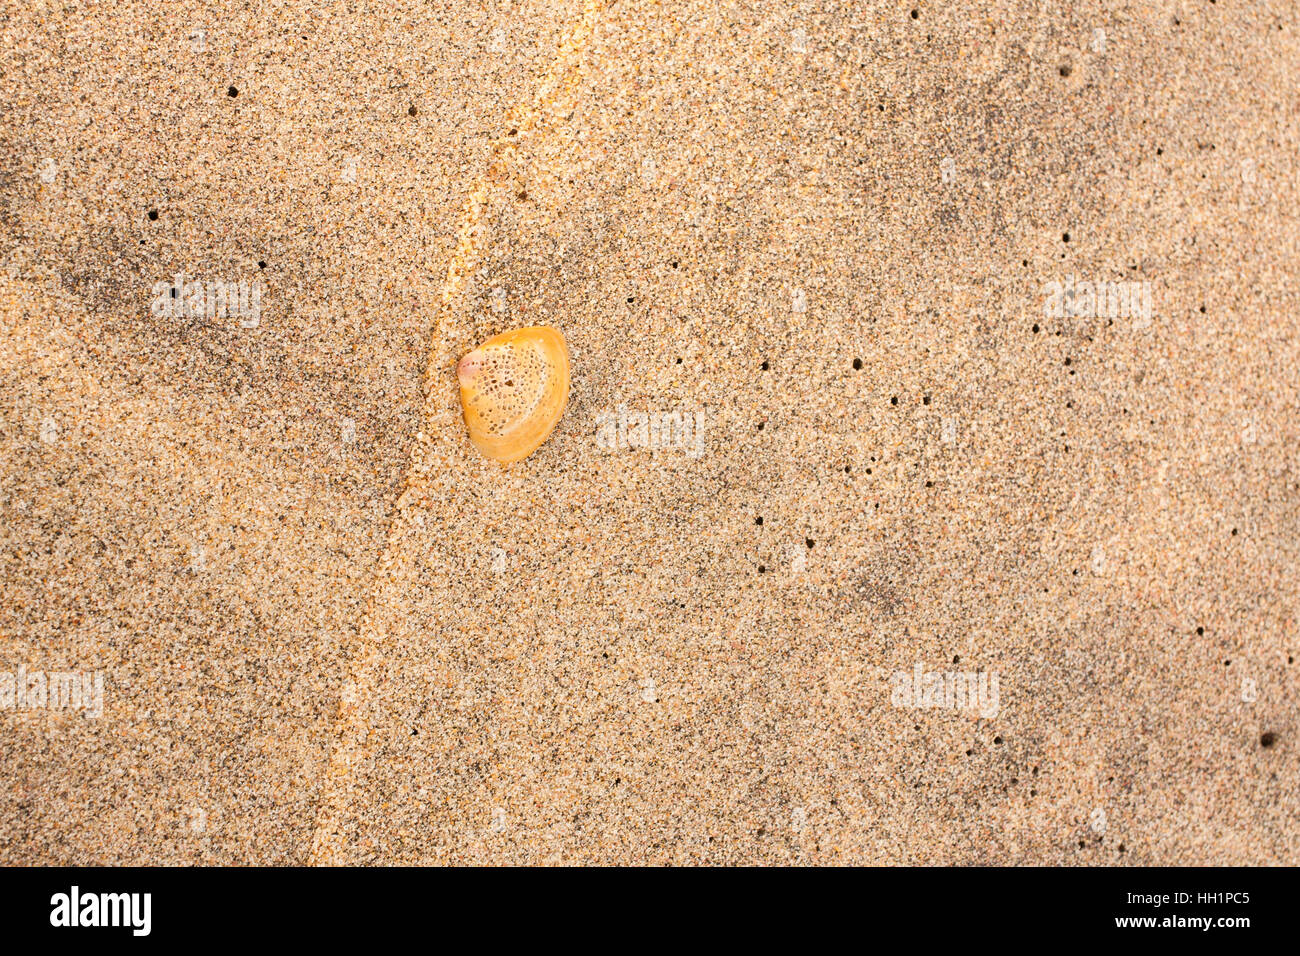 Vue aérienne du haut d'un coquillage perforé sur le sable de la plage. Banque D'Images